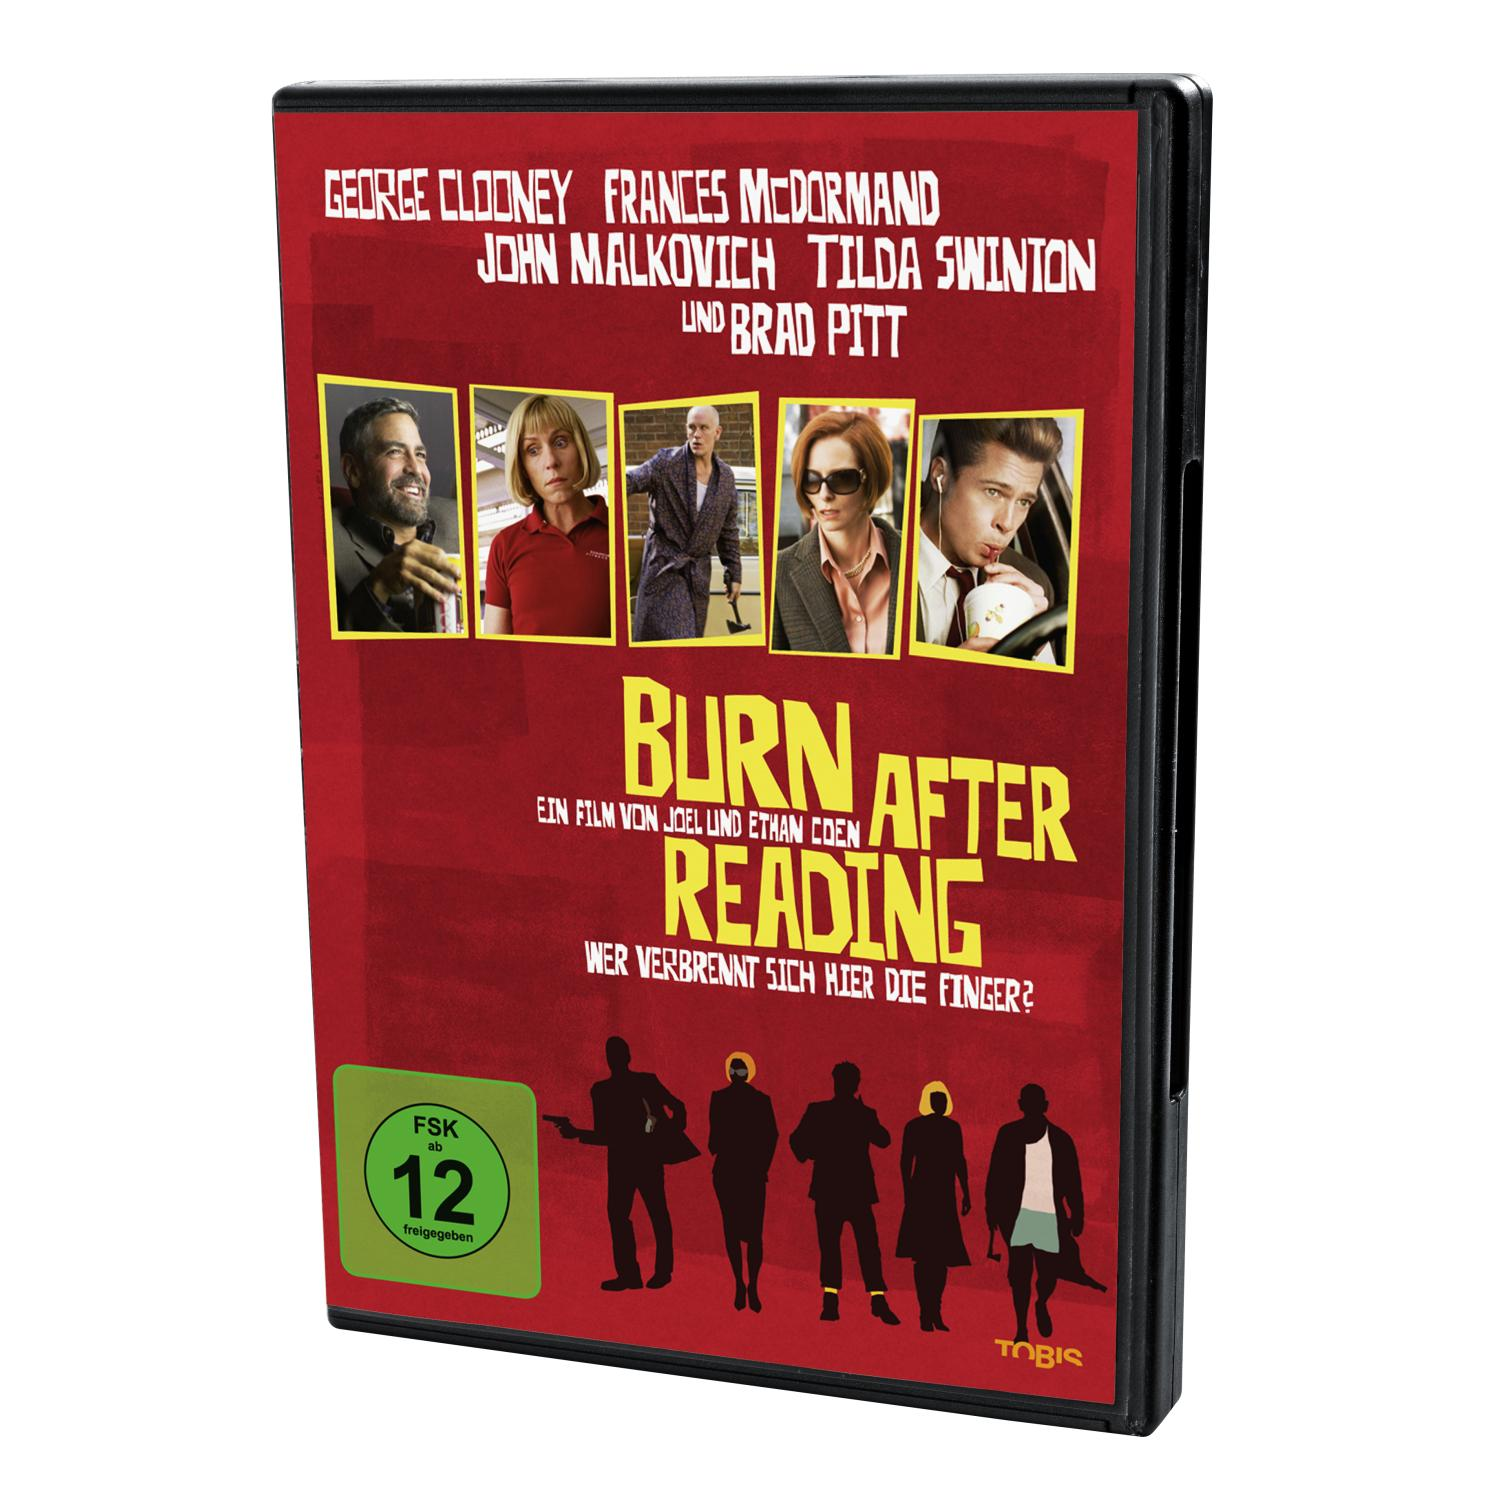 After sich verbrennt - Reading die DVD Finger? hier Wer Burn